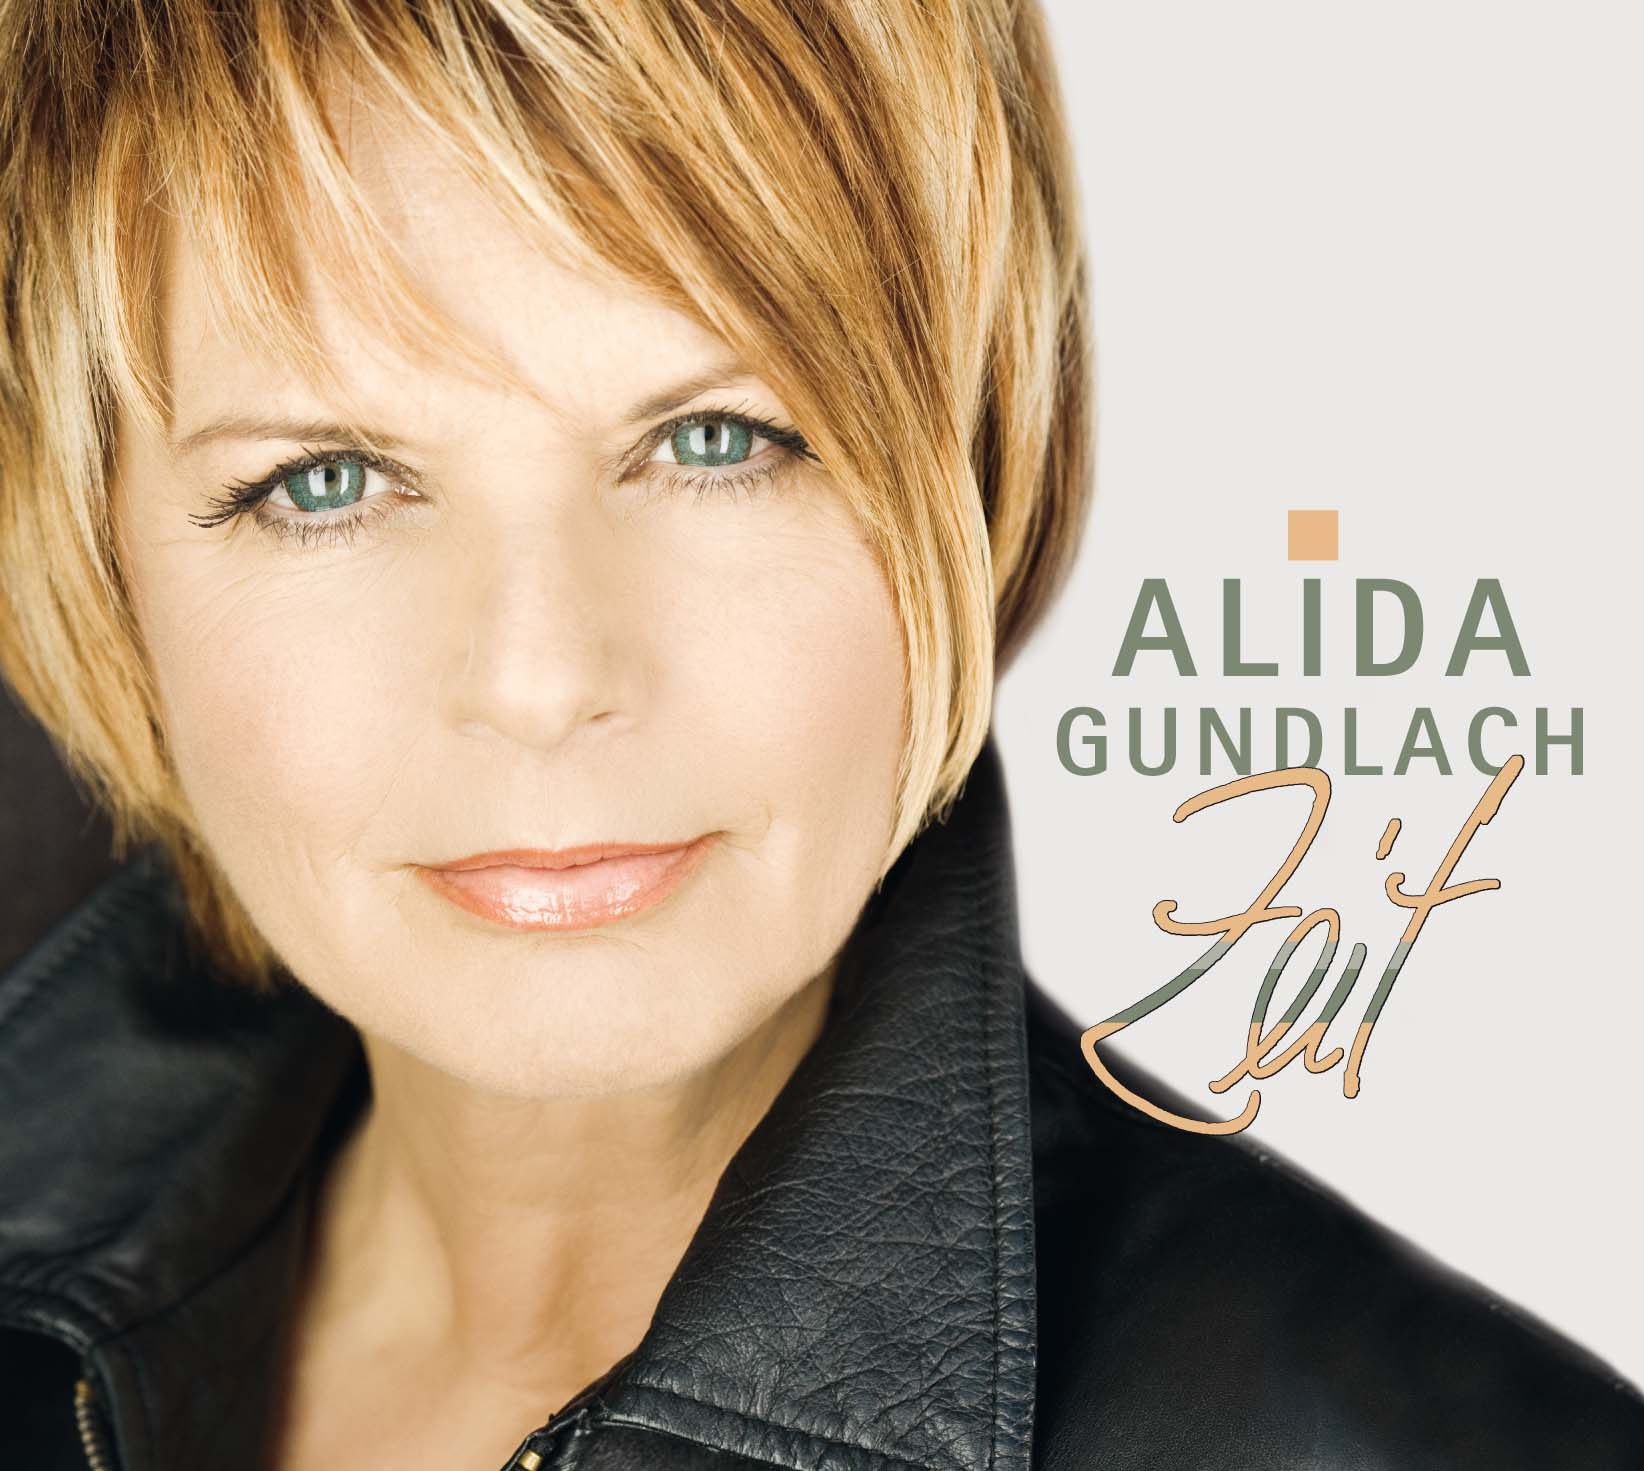 Alida Gundlach